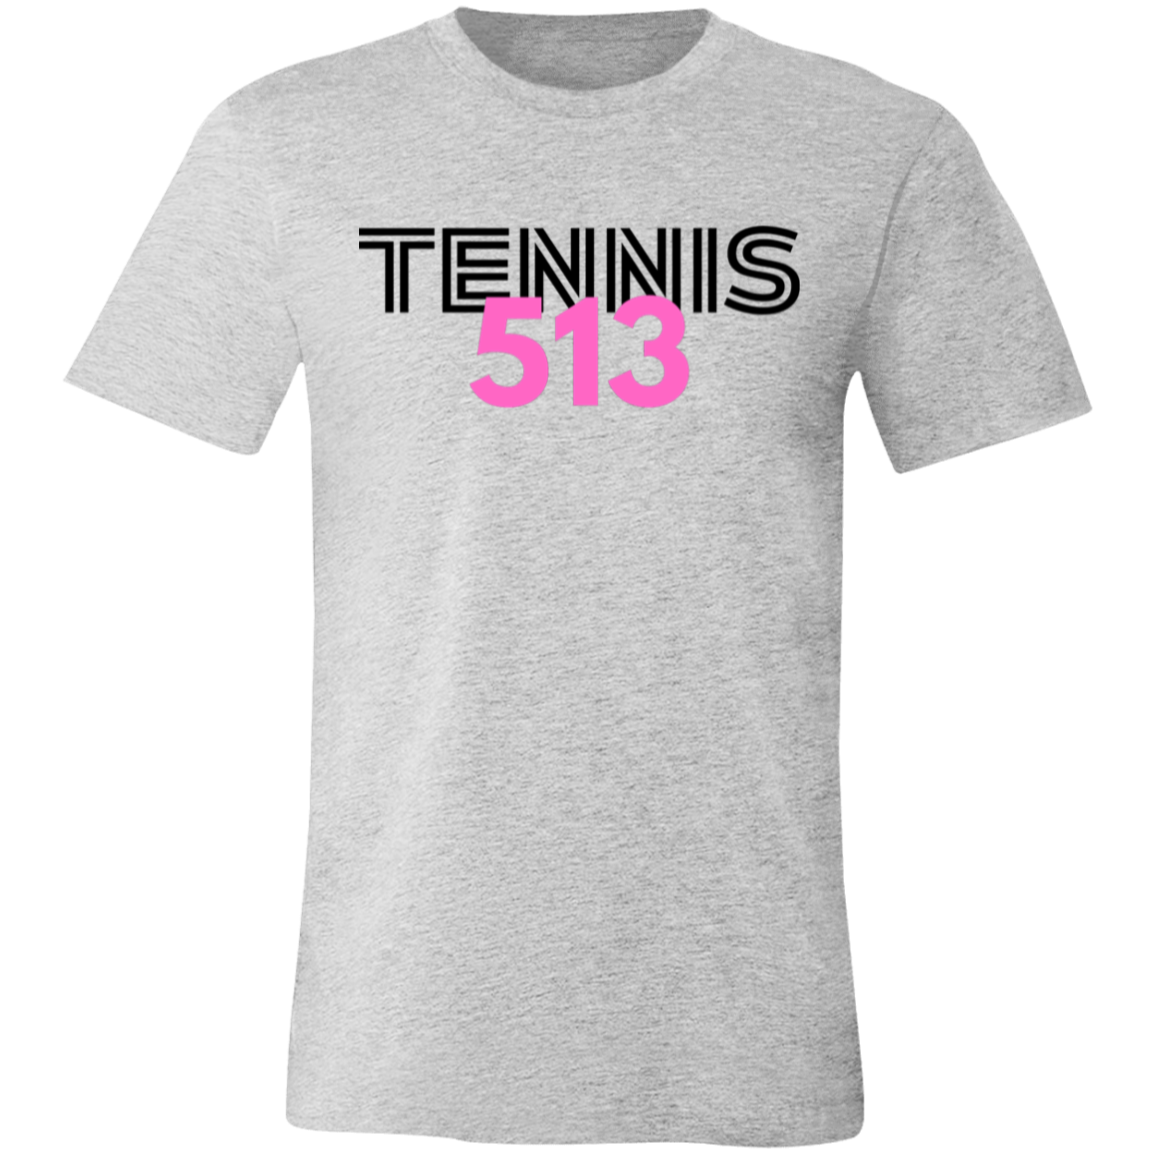 Tennis513 Unisex Jersey Tee